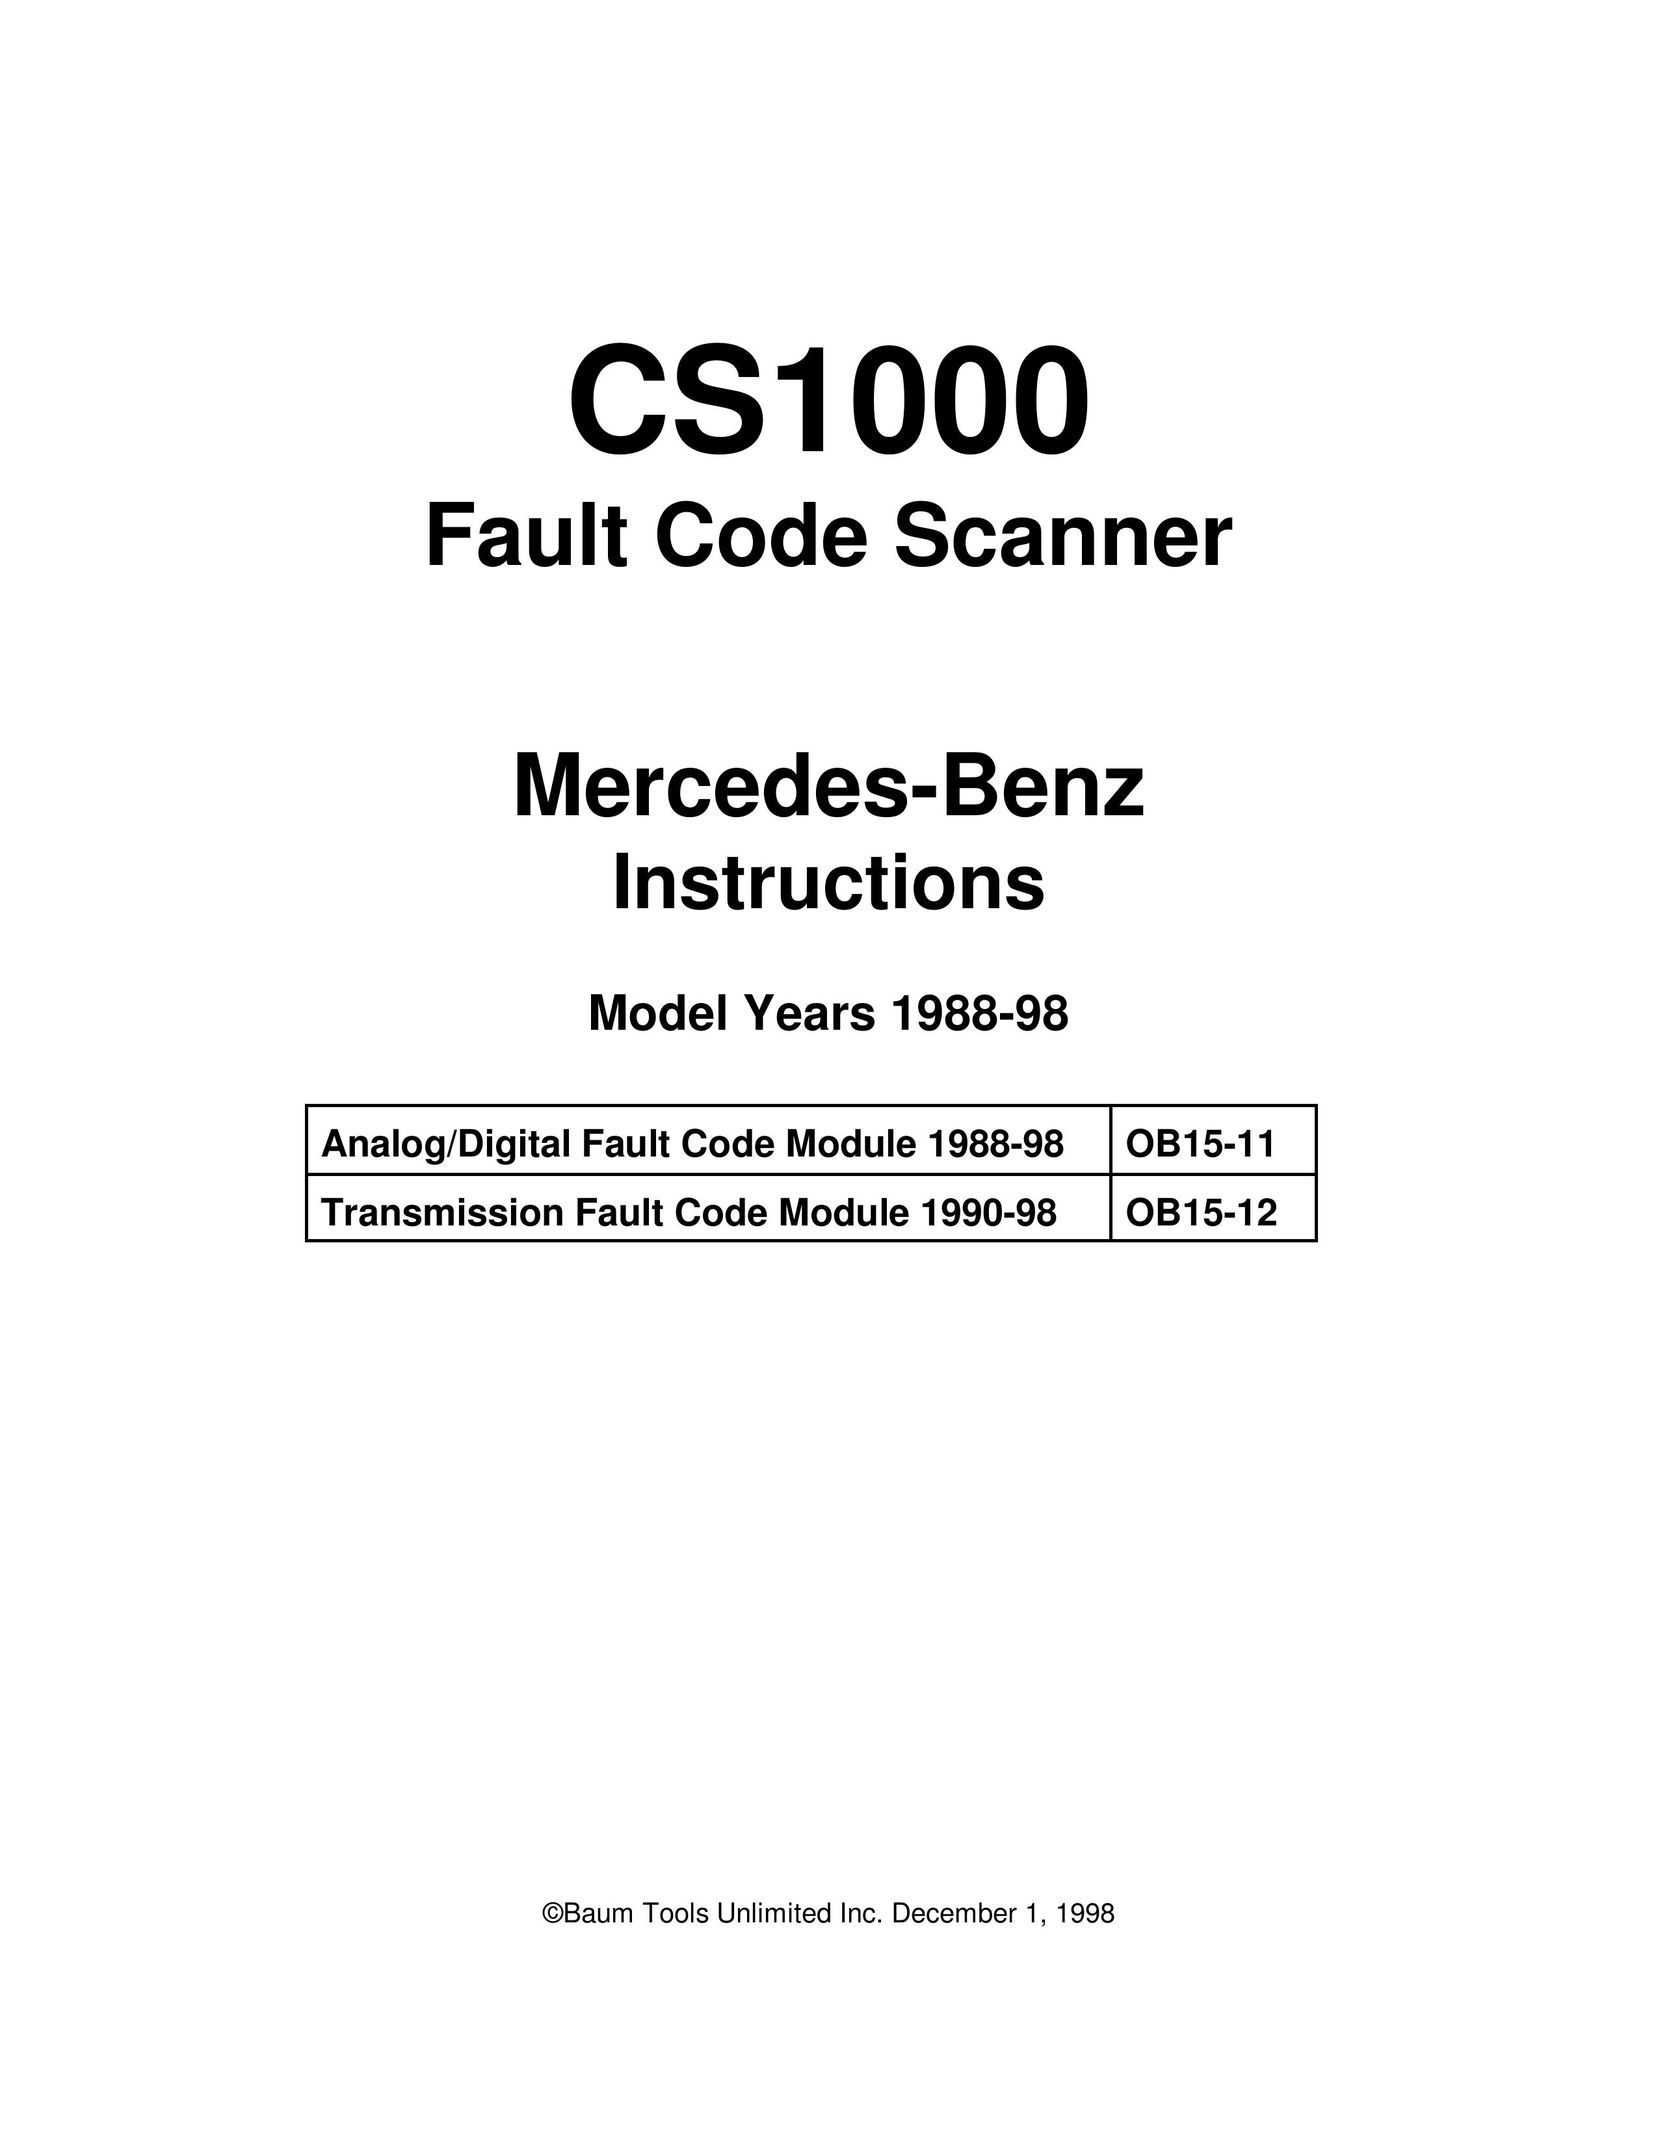 Mercedes-Benz CS1000 Barcode Reader User Manual